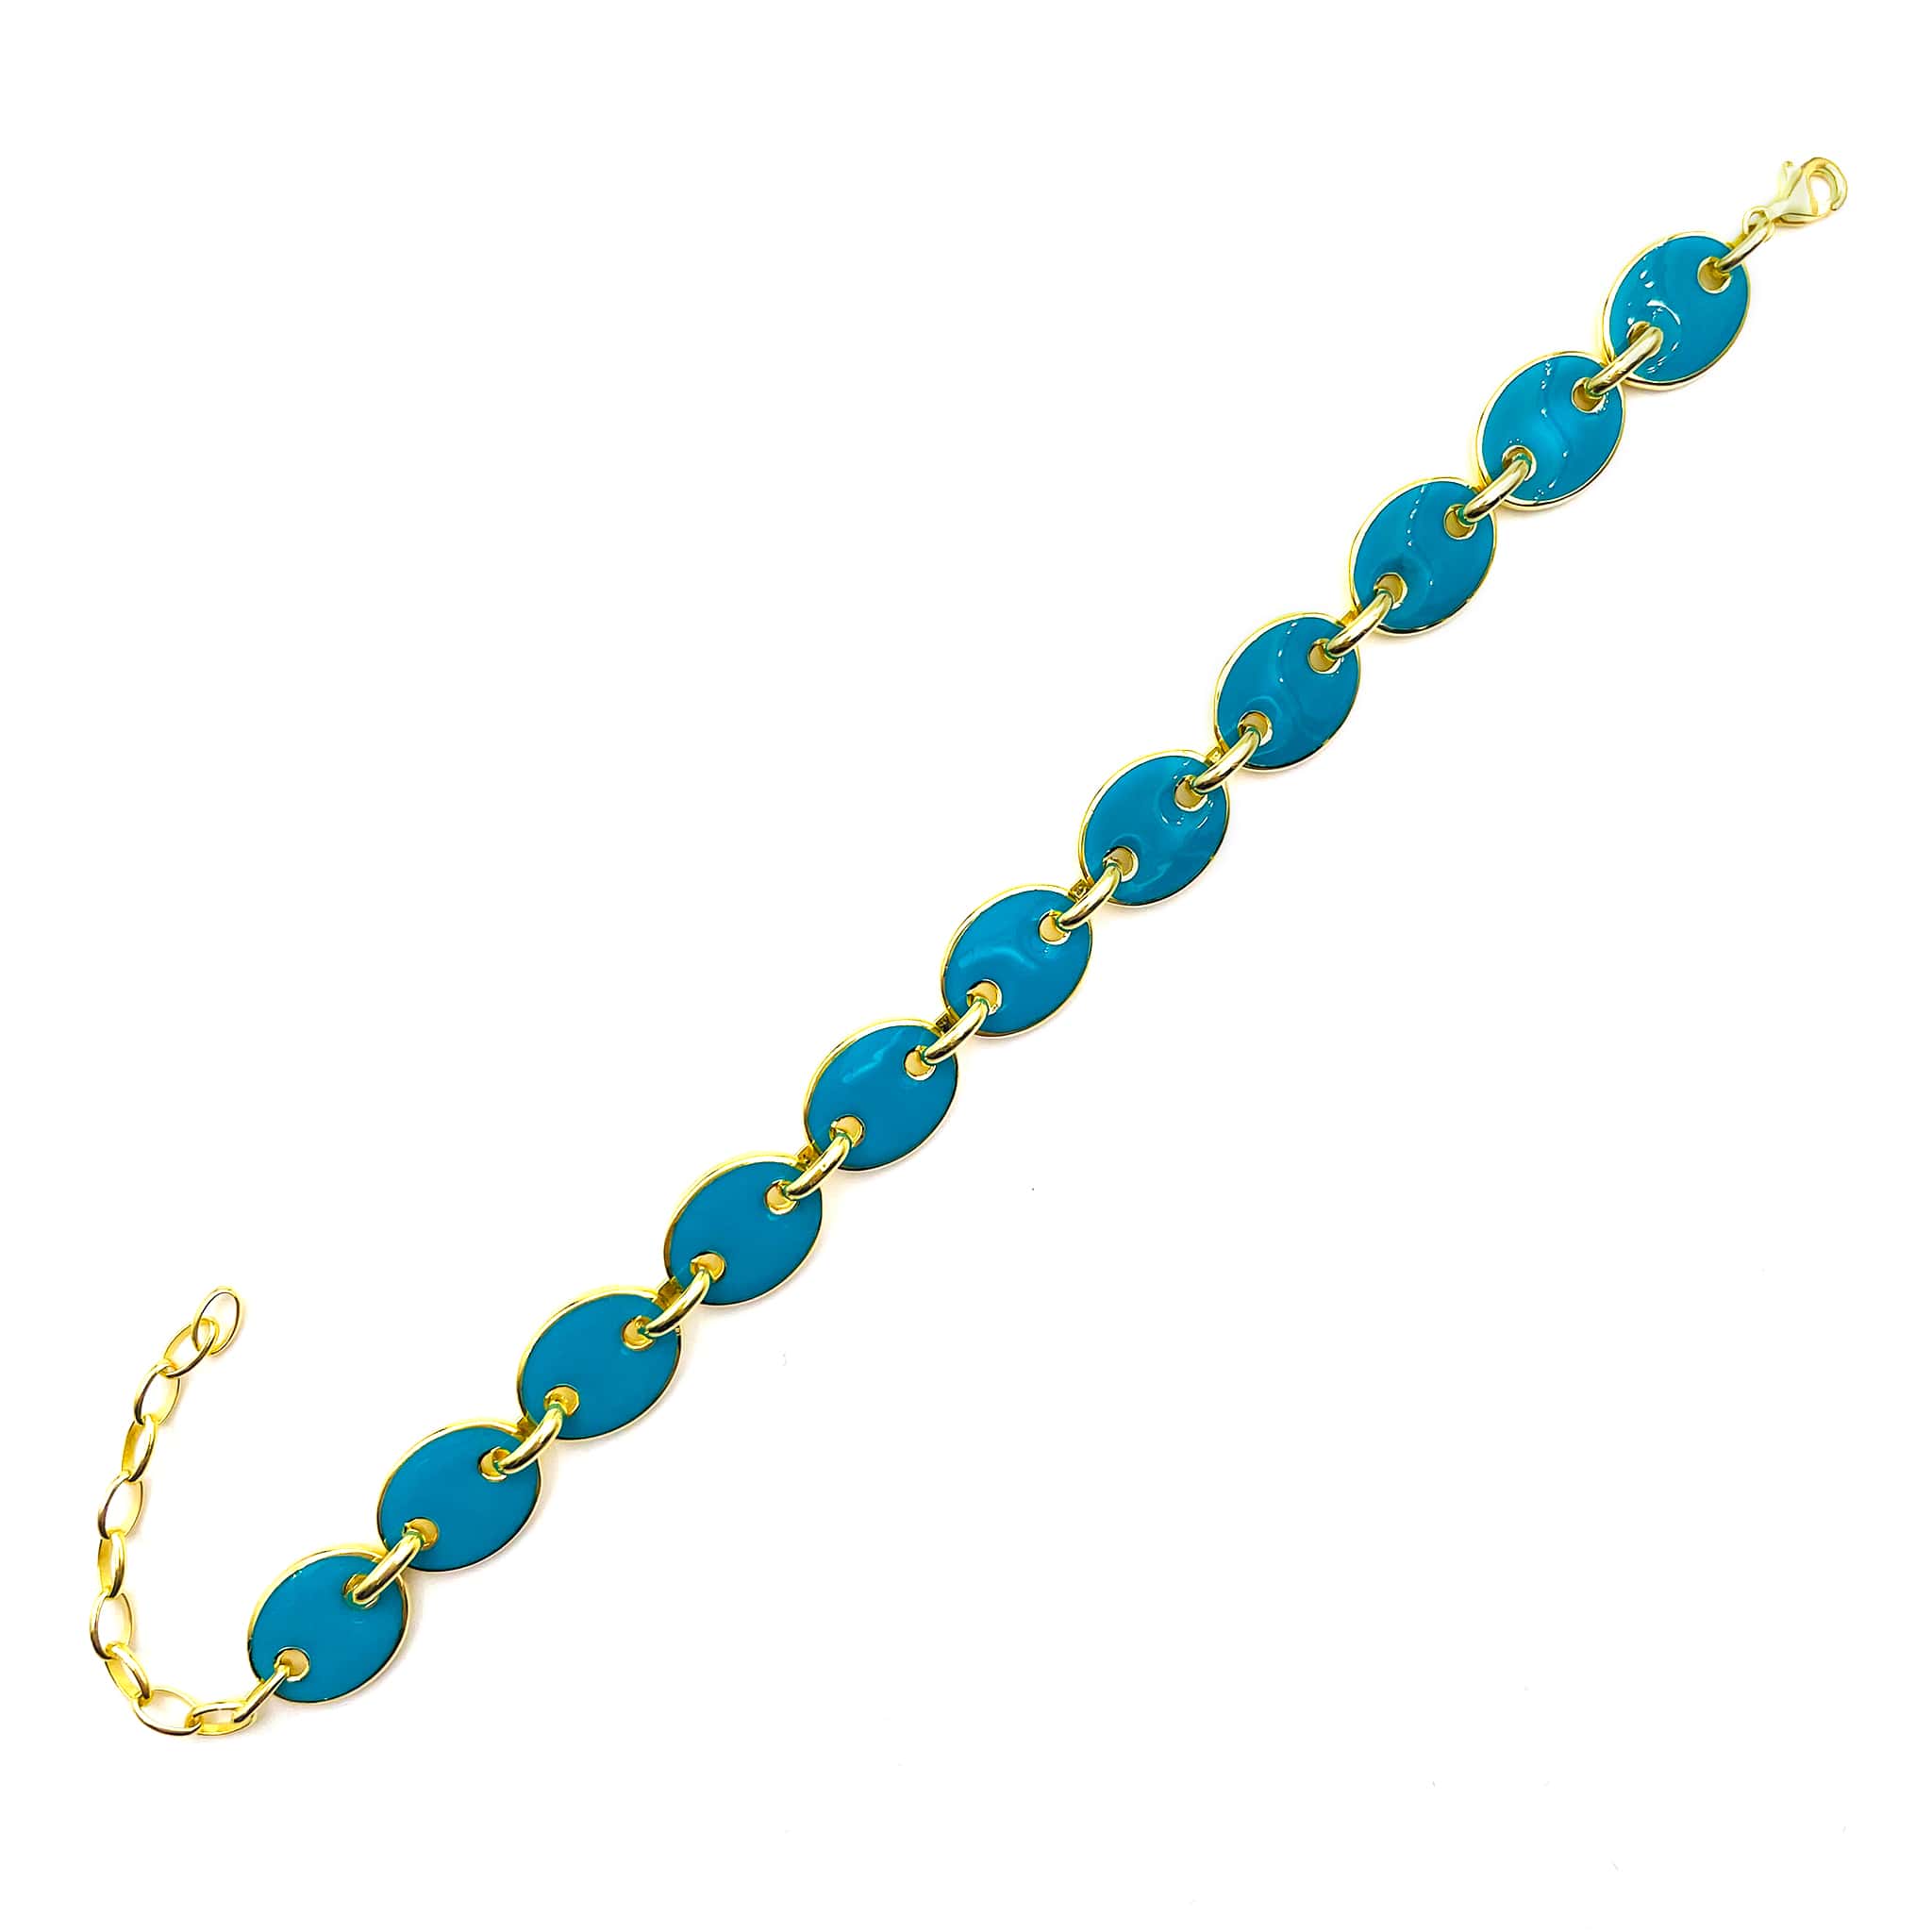 Buy Gold Filled Mariner Link Bracelet, Gold Layering Bracelet, Gold Chain  Bracelet, Bracelet, Dainty Chain Bracelet, Gift for Her, Gold Bracelet  Online in India - Etsy